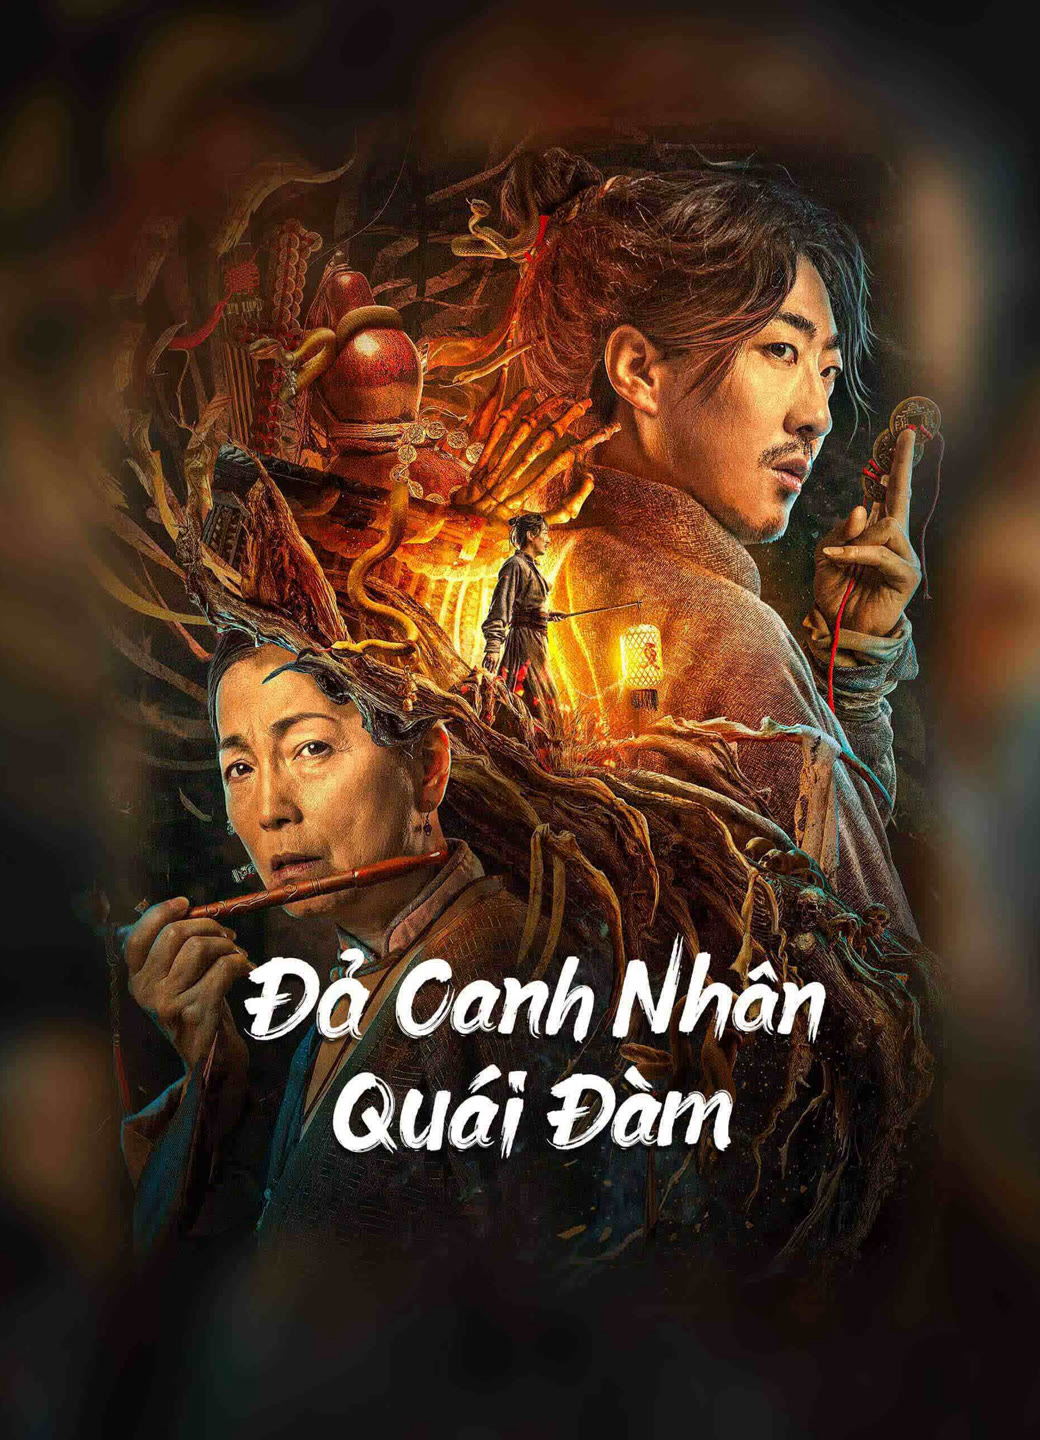 Xem Phim Đả Canh Nhân Quái Đàm (the story of the night watcher)